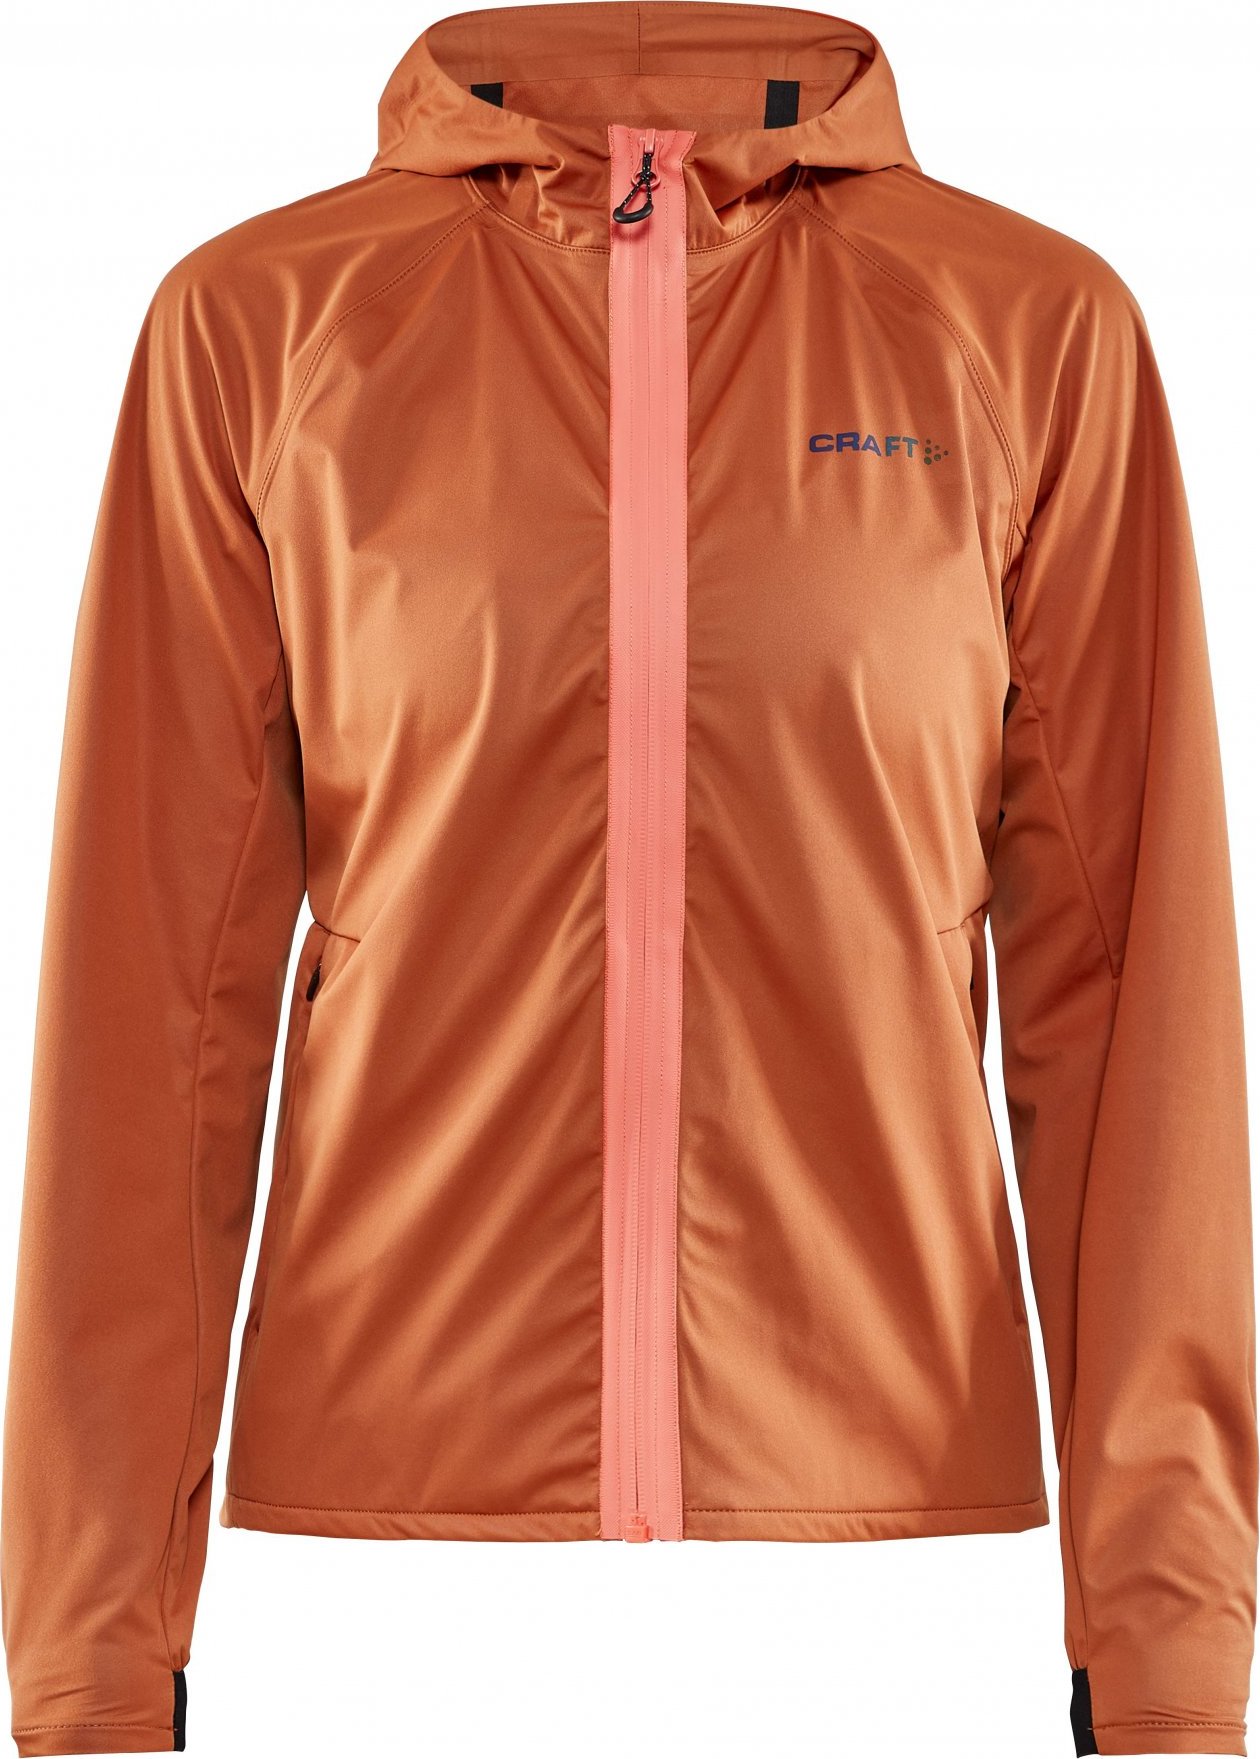 Dámská běžecká bunda CRAFT Hydro oranžová Velikost: L